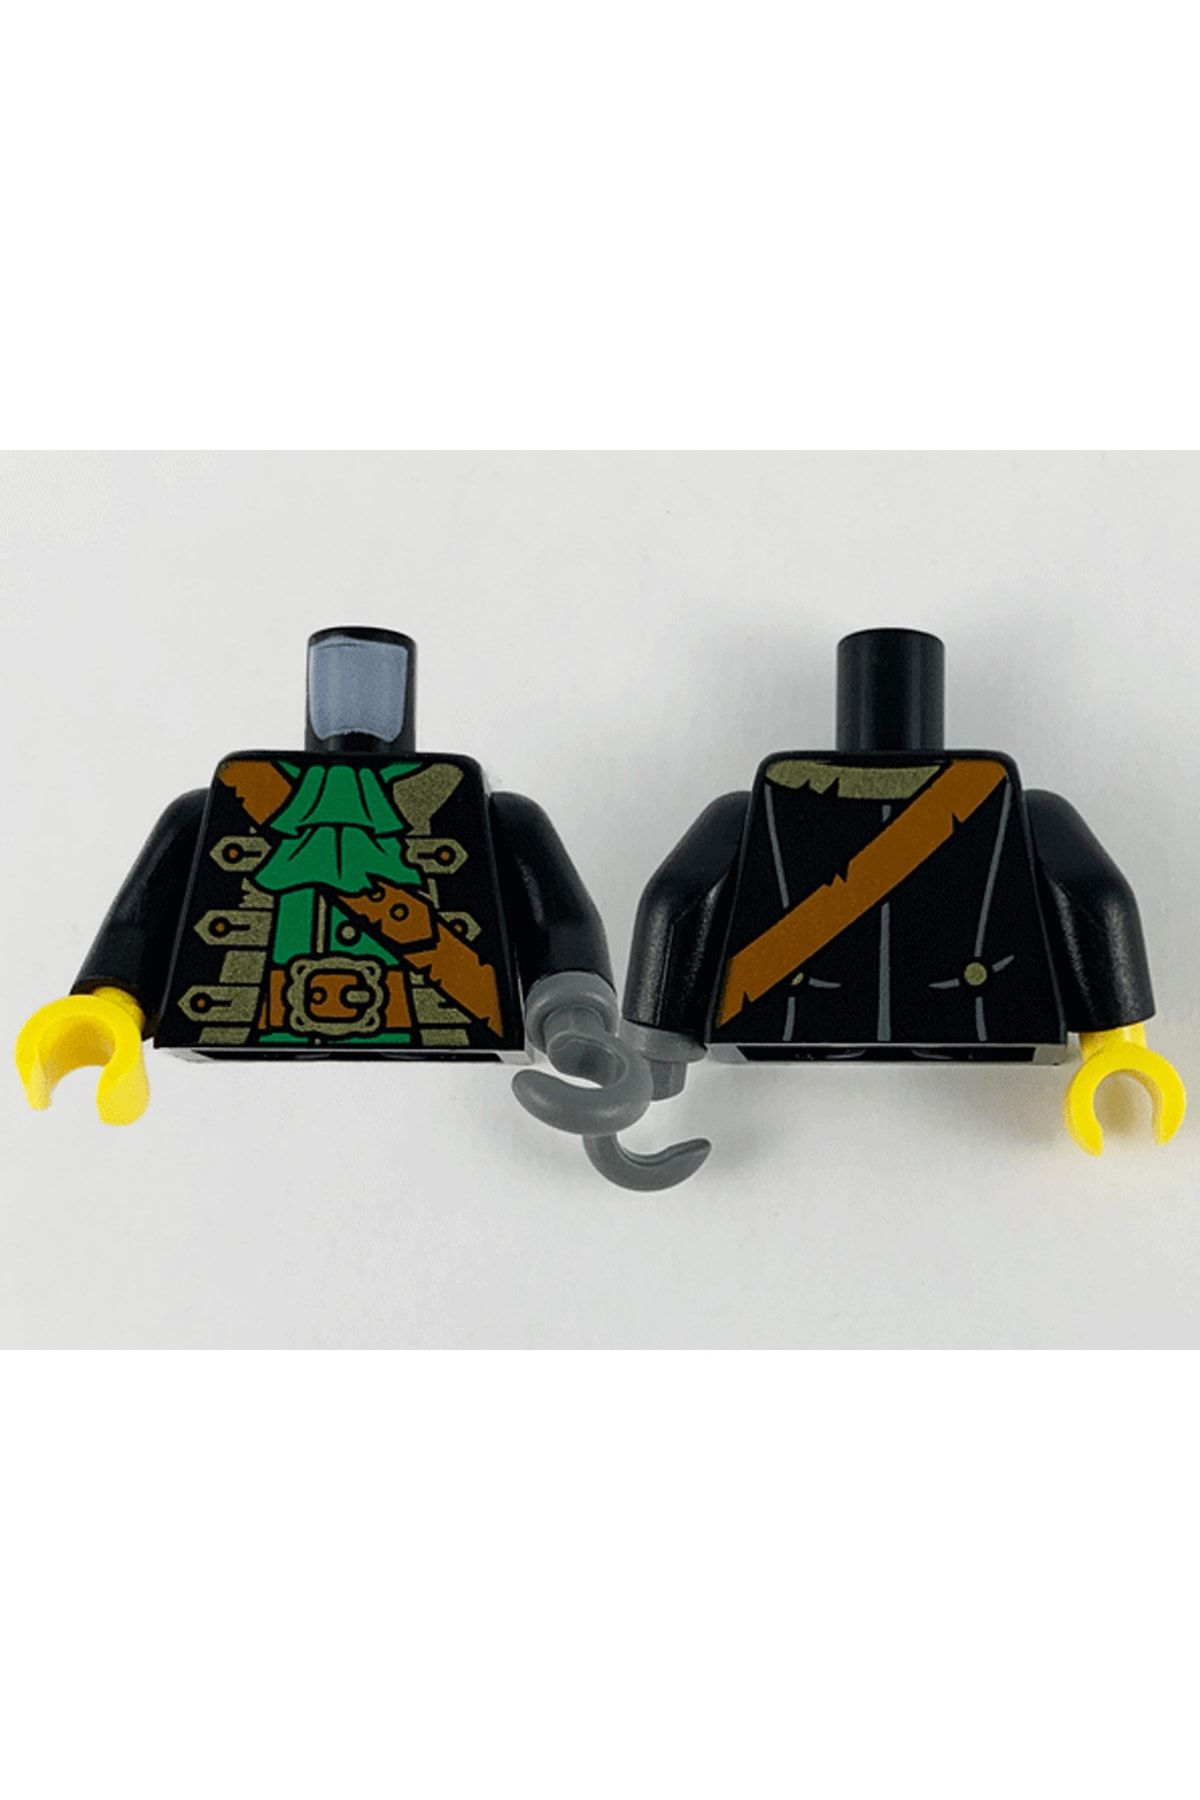 LEGO Orjinal Moc Custom Minifigür Minifigure Gövde Torso Pirate Siyah Korsan Kaptan Kanca